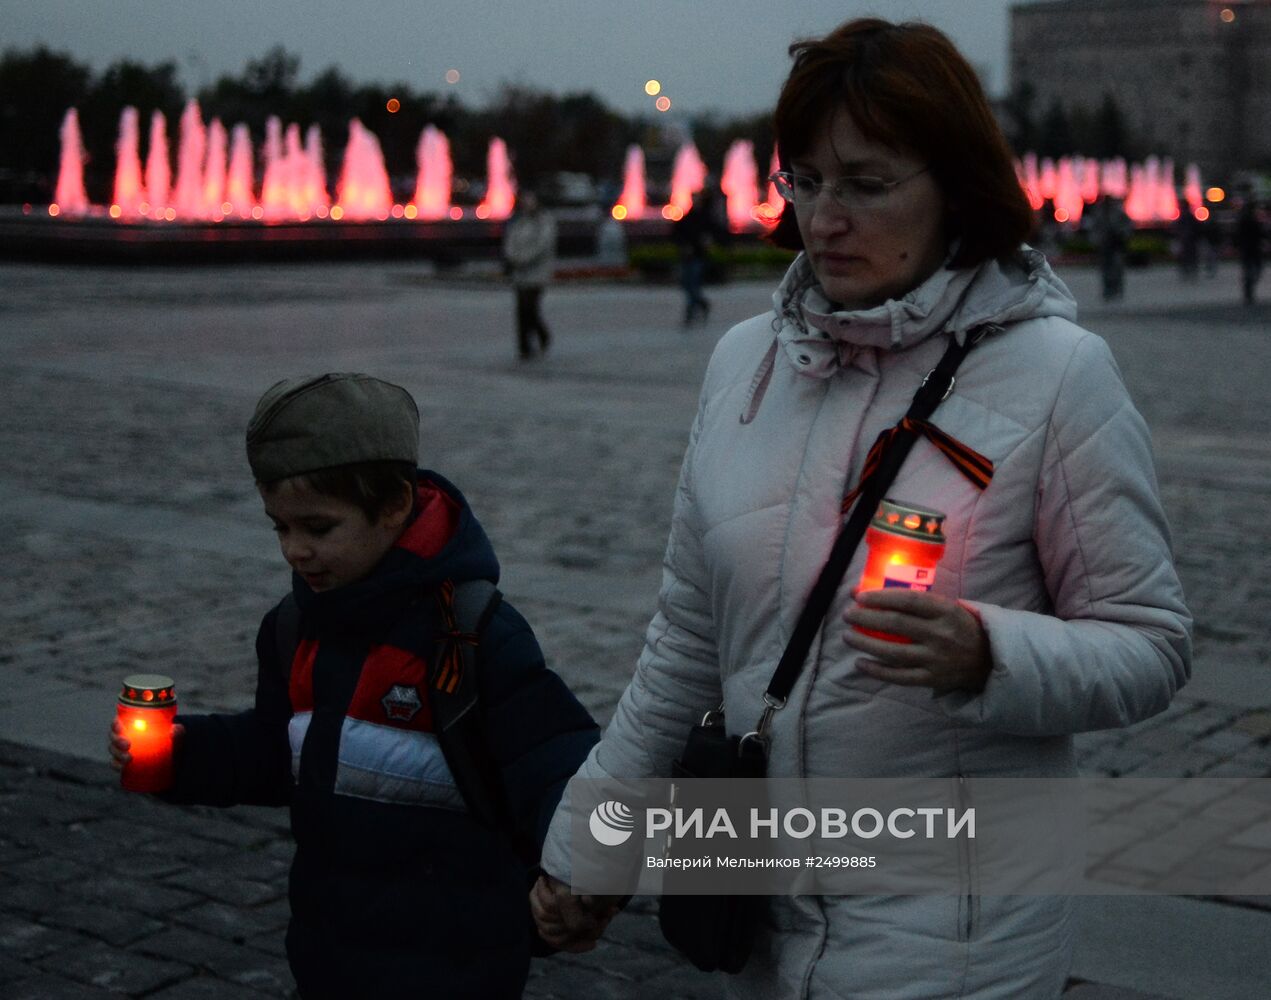 Акция памяти "Донецк: невинно убиенные" проходит на Поклонной горе в Москве